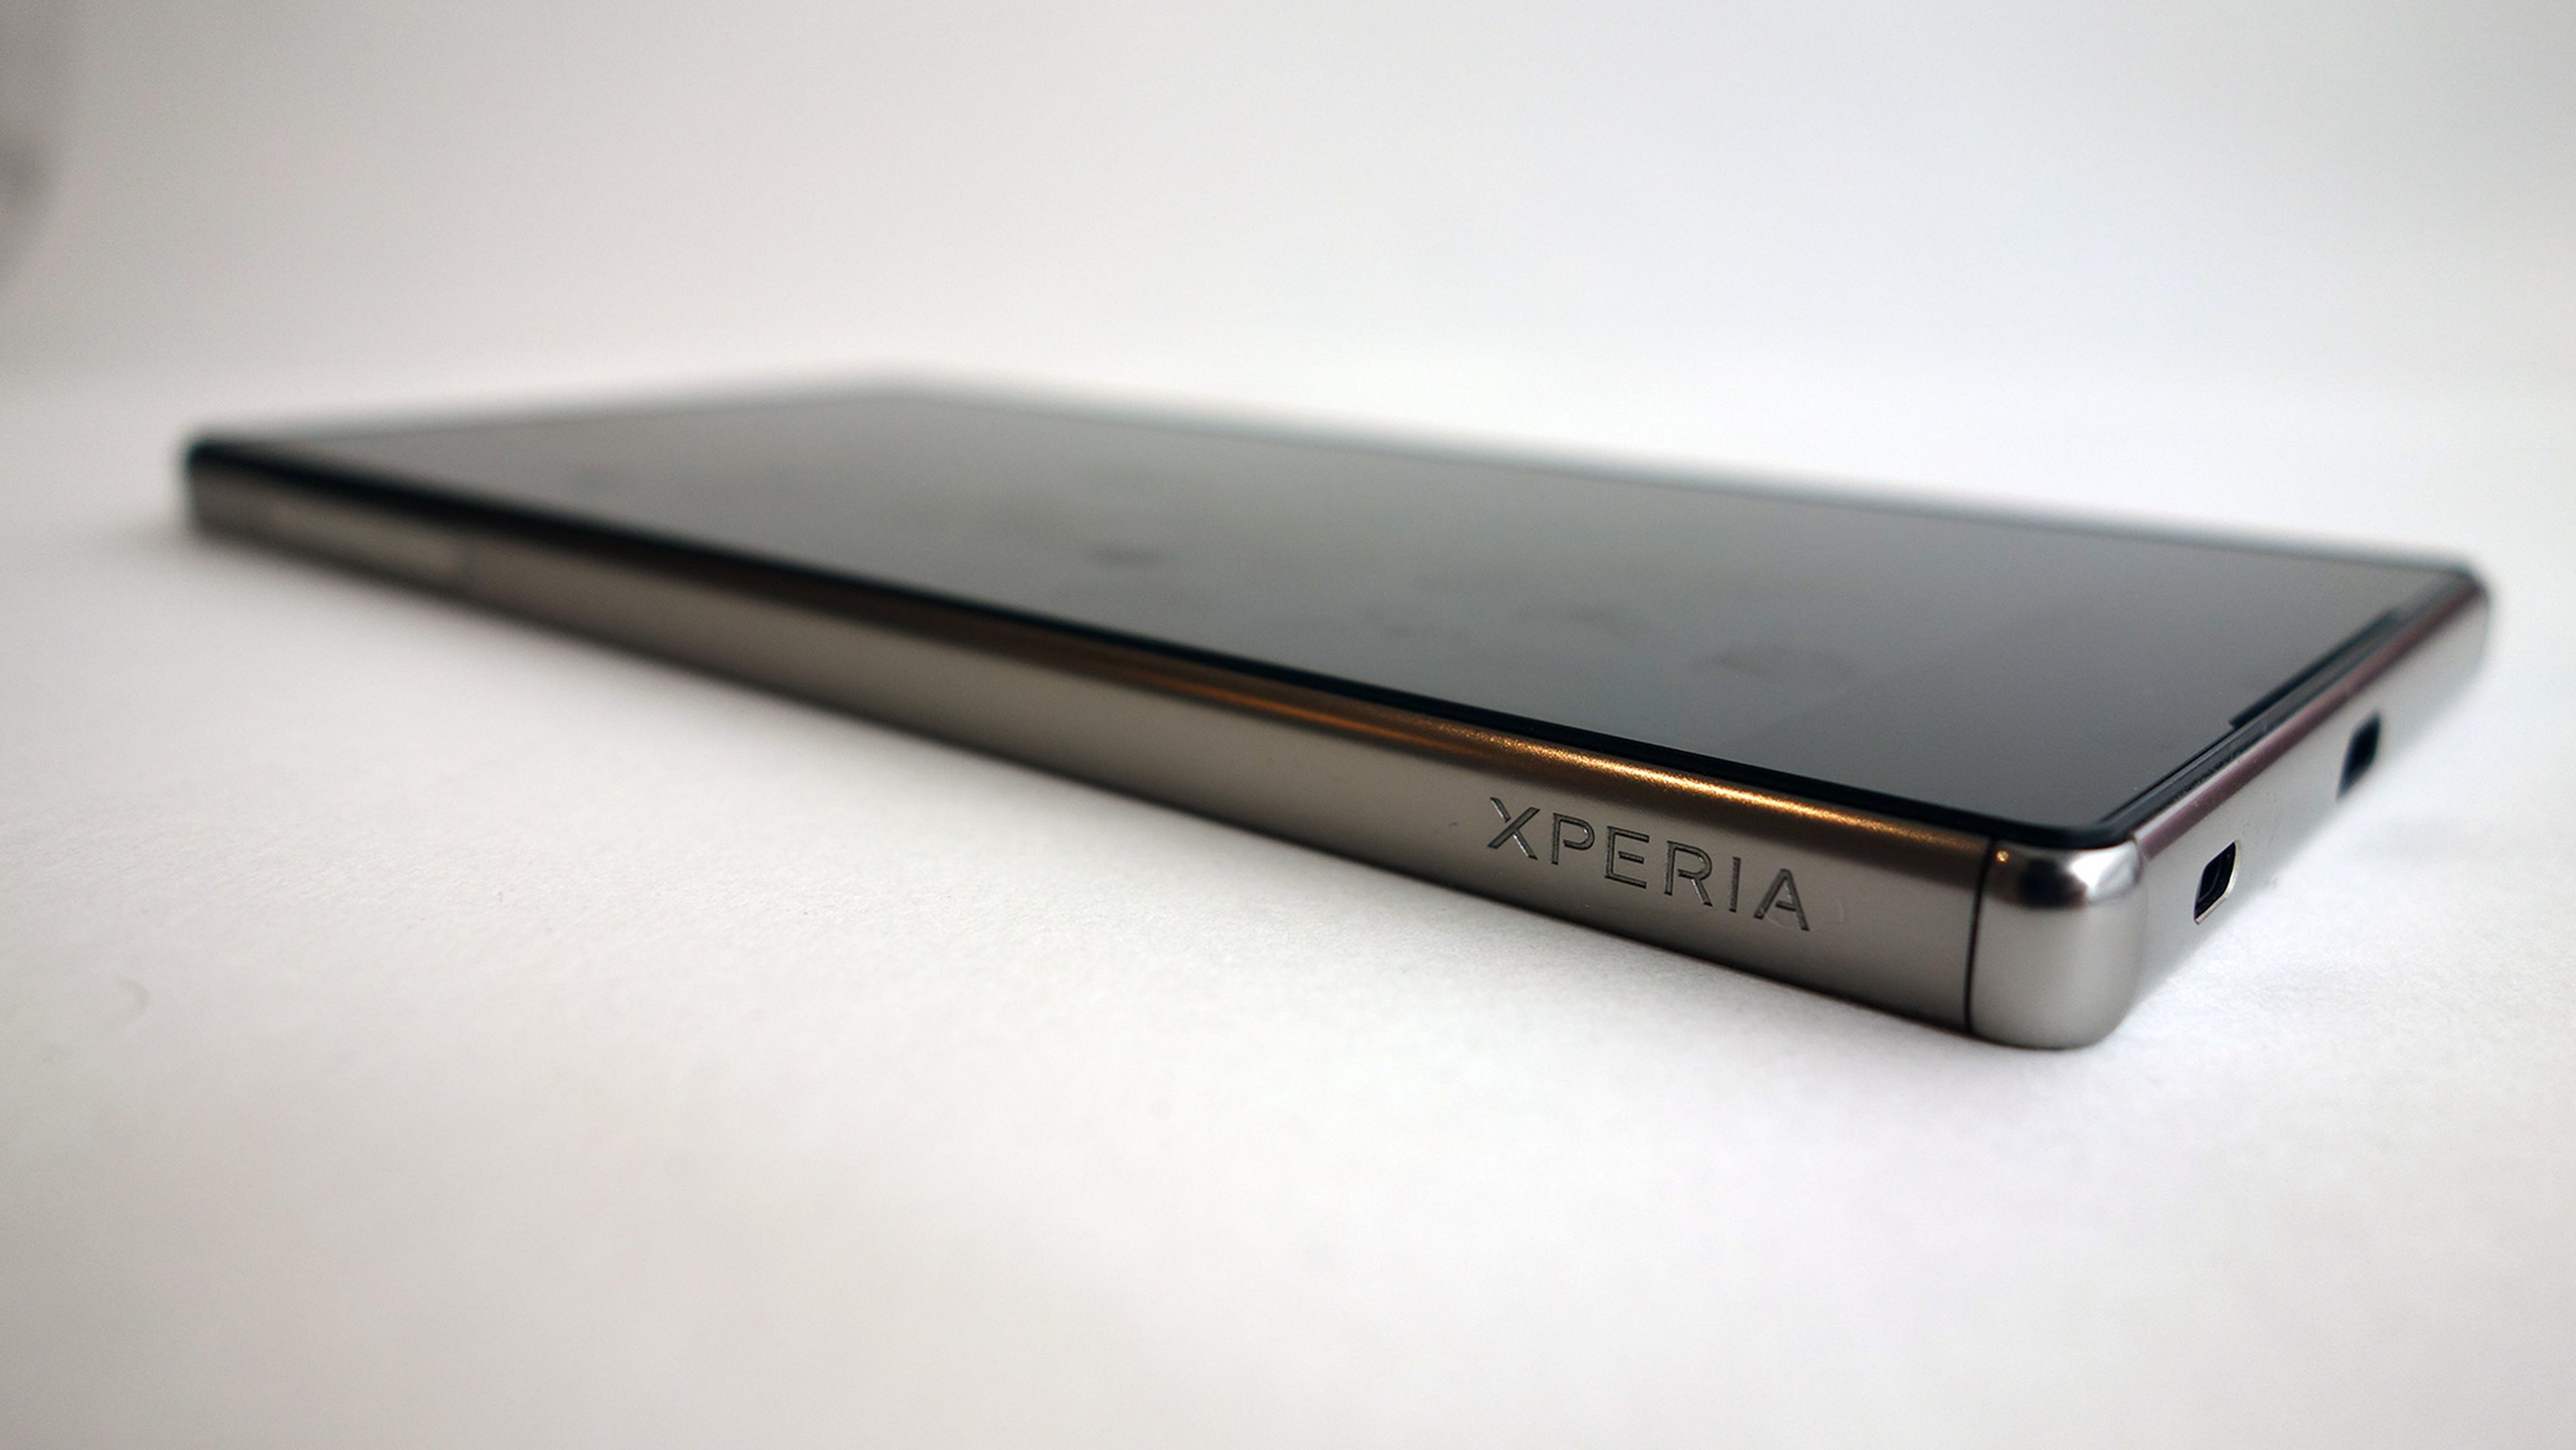 Sony Z5 Premium logo Xperia